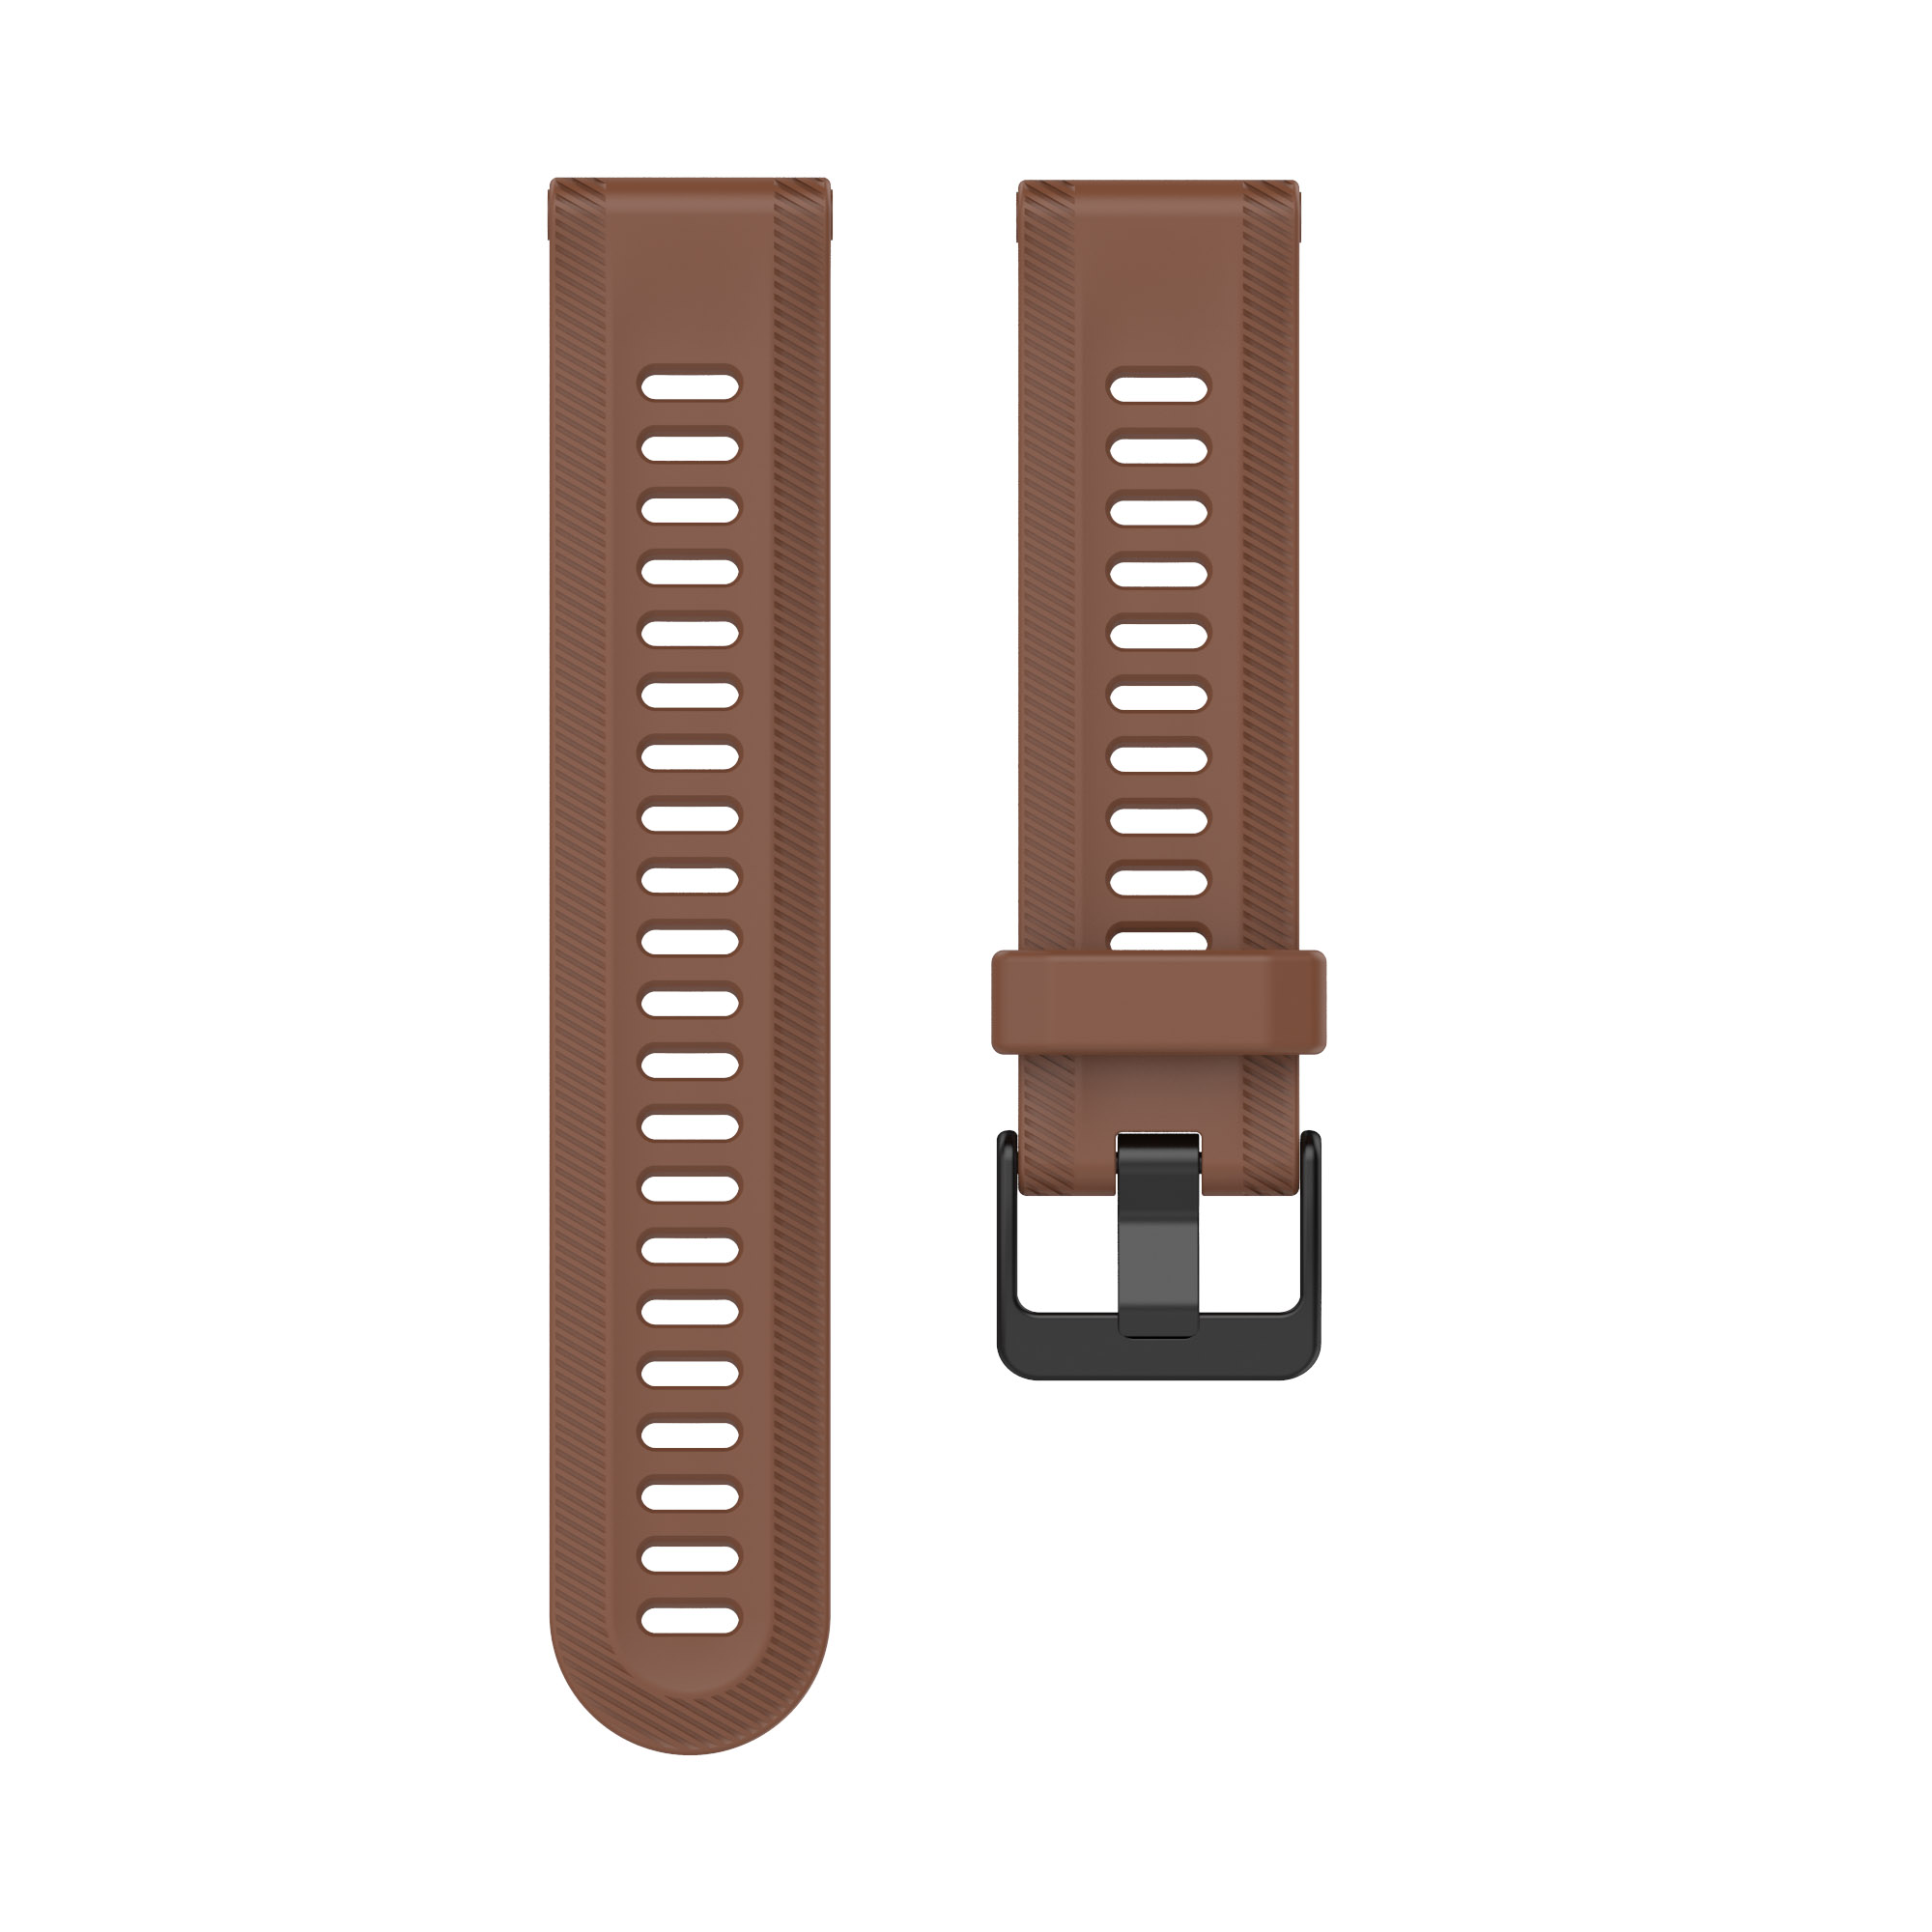 INF Armband Silikon, Forerunner Ersatzarmband, Braun / 265 Garmin, 965